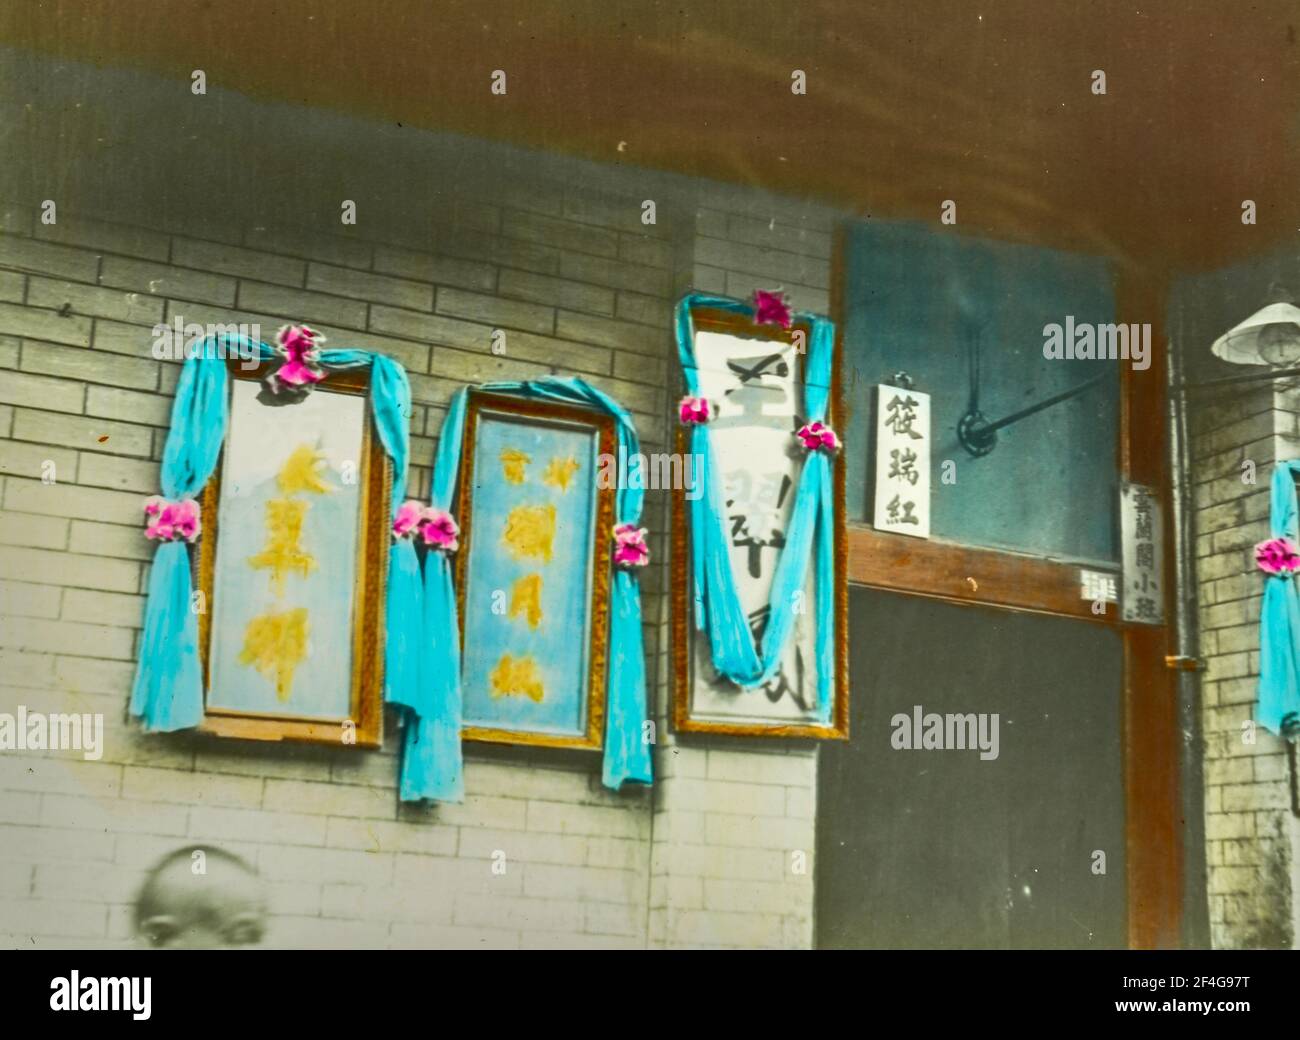 Handkolorierte, unbetitelte Laternenrutsche mit Dekorationen außerhalb eines Gebäudes, China, Peking (China), 1919. Aus der Sammlung Sidney D. Gamble Photographs. () Stockfoto